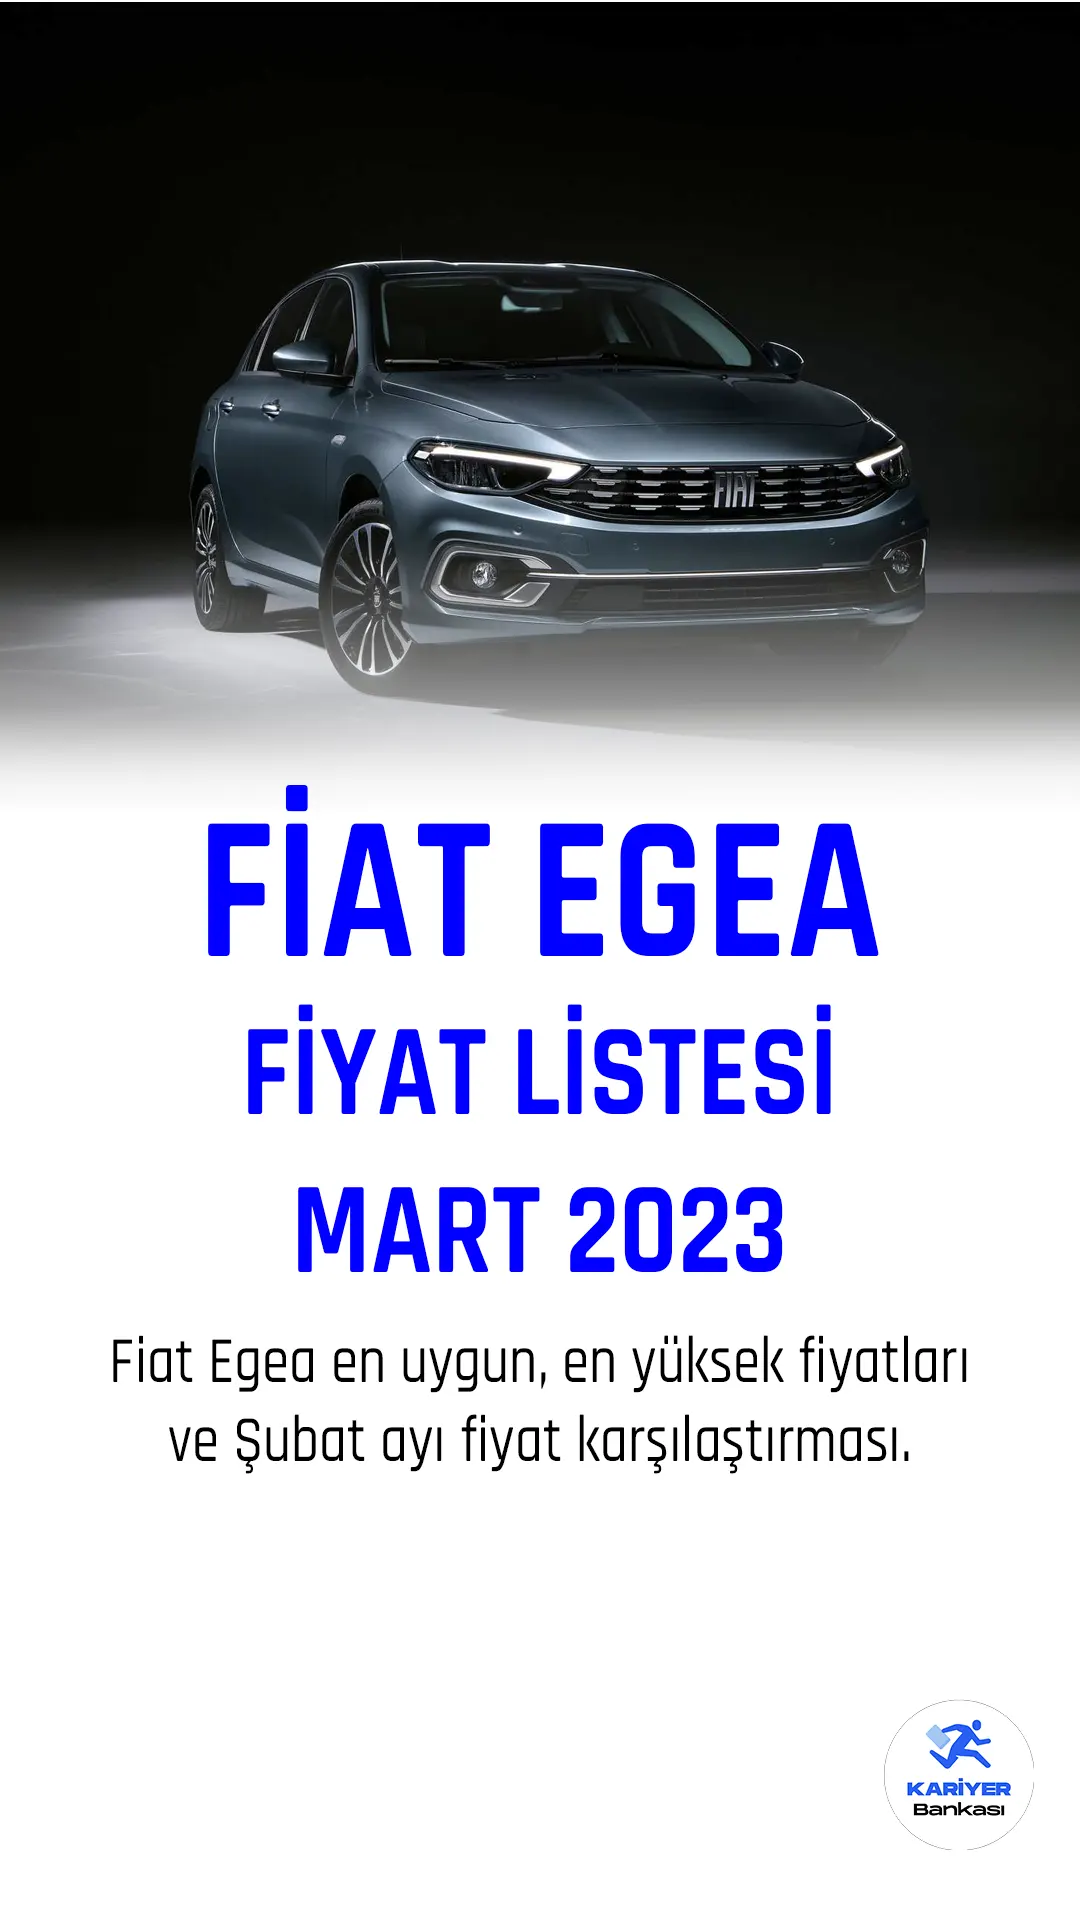 Fiat Egea Mart fiyat listesi yayımlandı. Türkiye'nin en çok satın araçları arasında ilk sıralarda yer alan araç markası Fiat, her ay fiyat listesini güncellemeye devam ediyor.Fiat Egea, İtalyan otomobil üreticisi Fiat'ın 2015 yılında üretmeye başladığı bir kompakt sedan modelidir. Egea, Türkiye'de üretilmektedir ve Türkiye'de oldukça popüler bir araçtır.